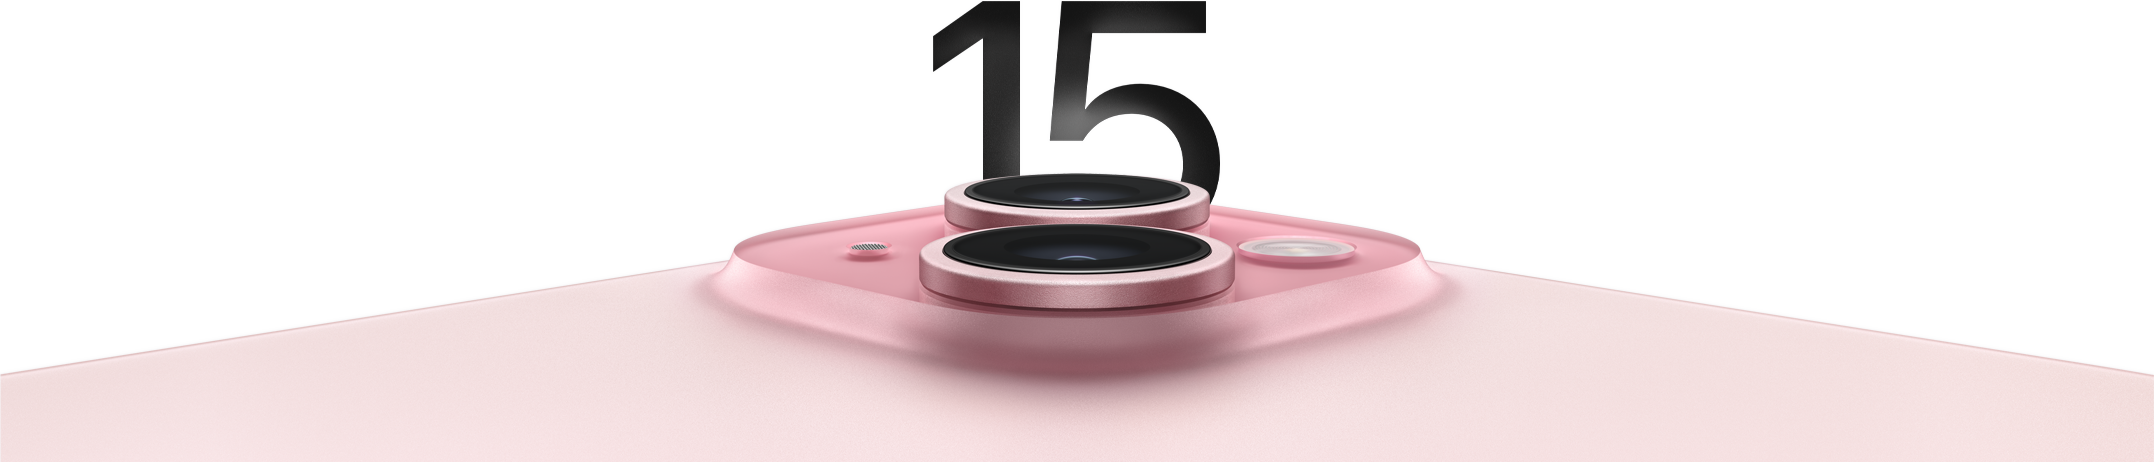 Iphone 15 telah hadir di Indonesia Hari Ini! Bisa Dibeli Langsung di Toko Resmi Mulai Harga 16 Juta